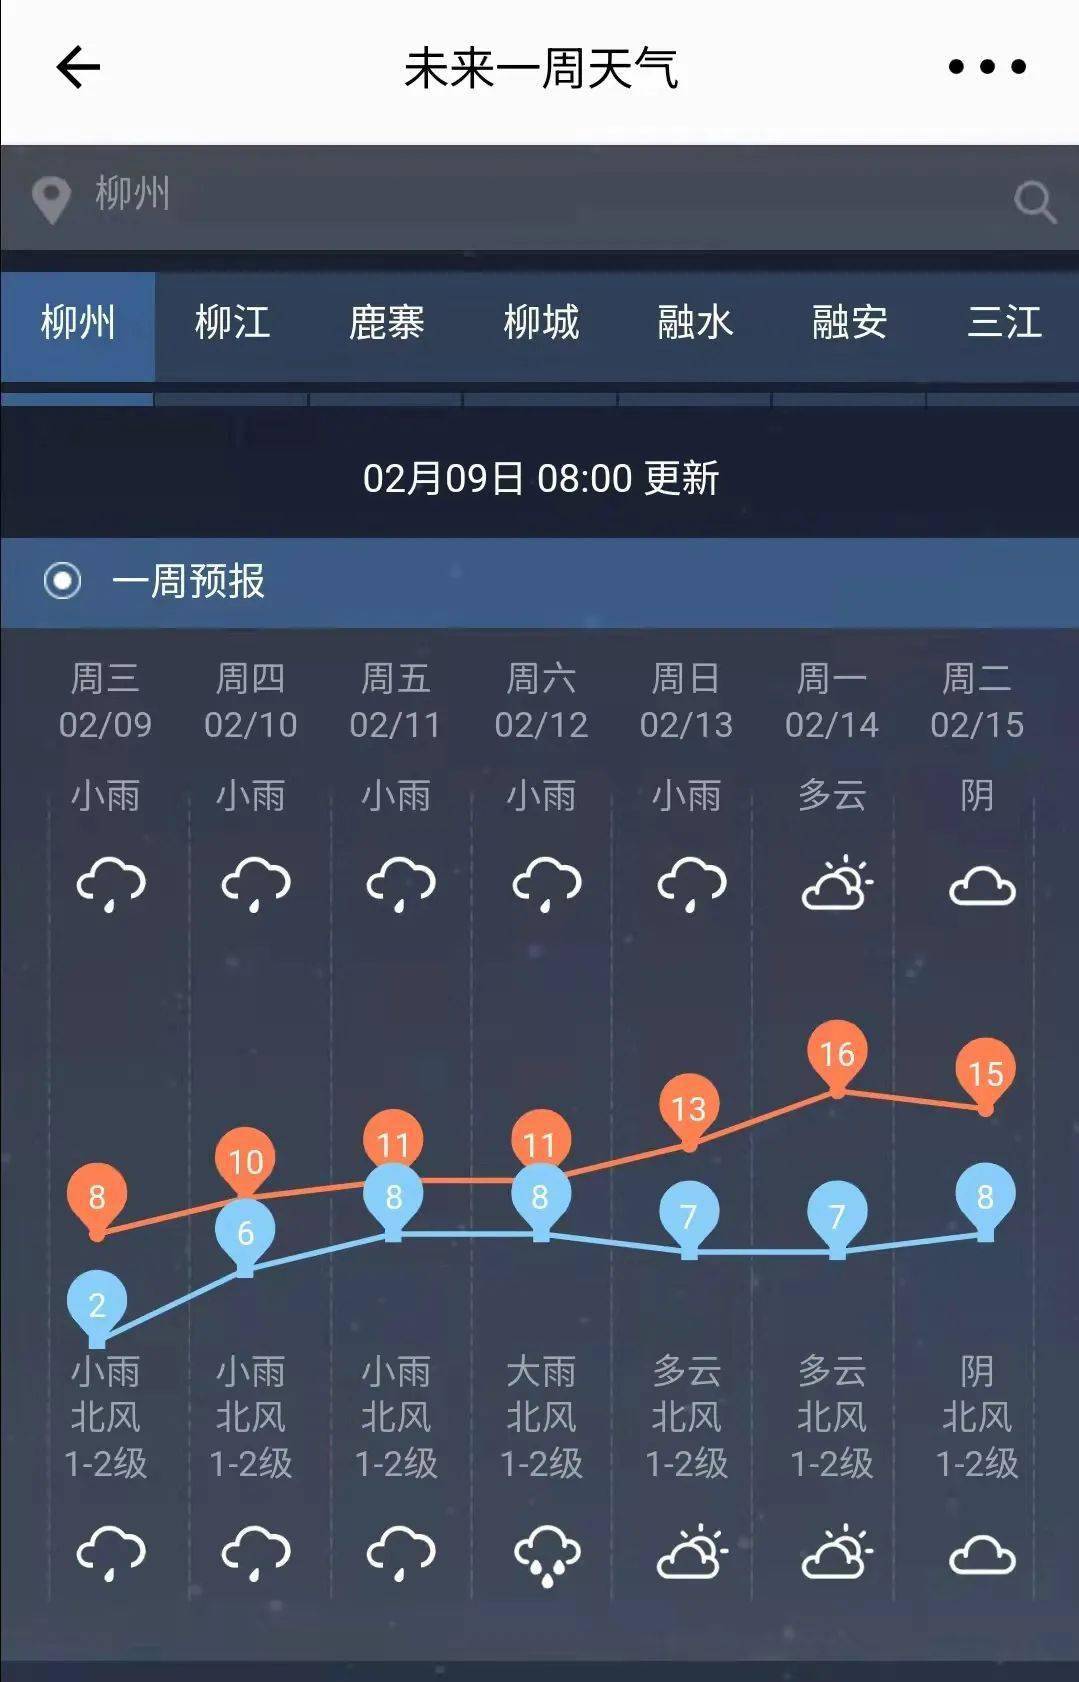 柳州天气预报图片